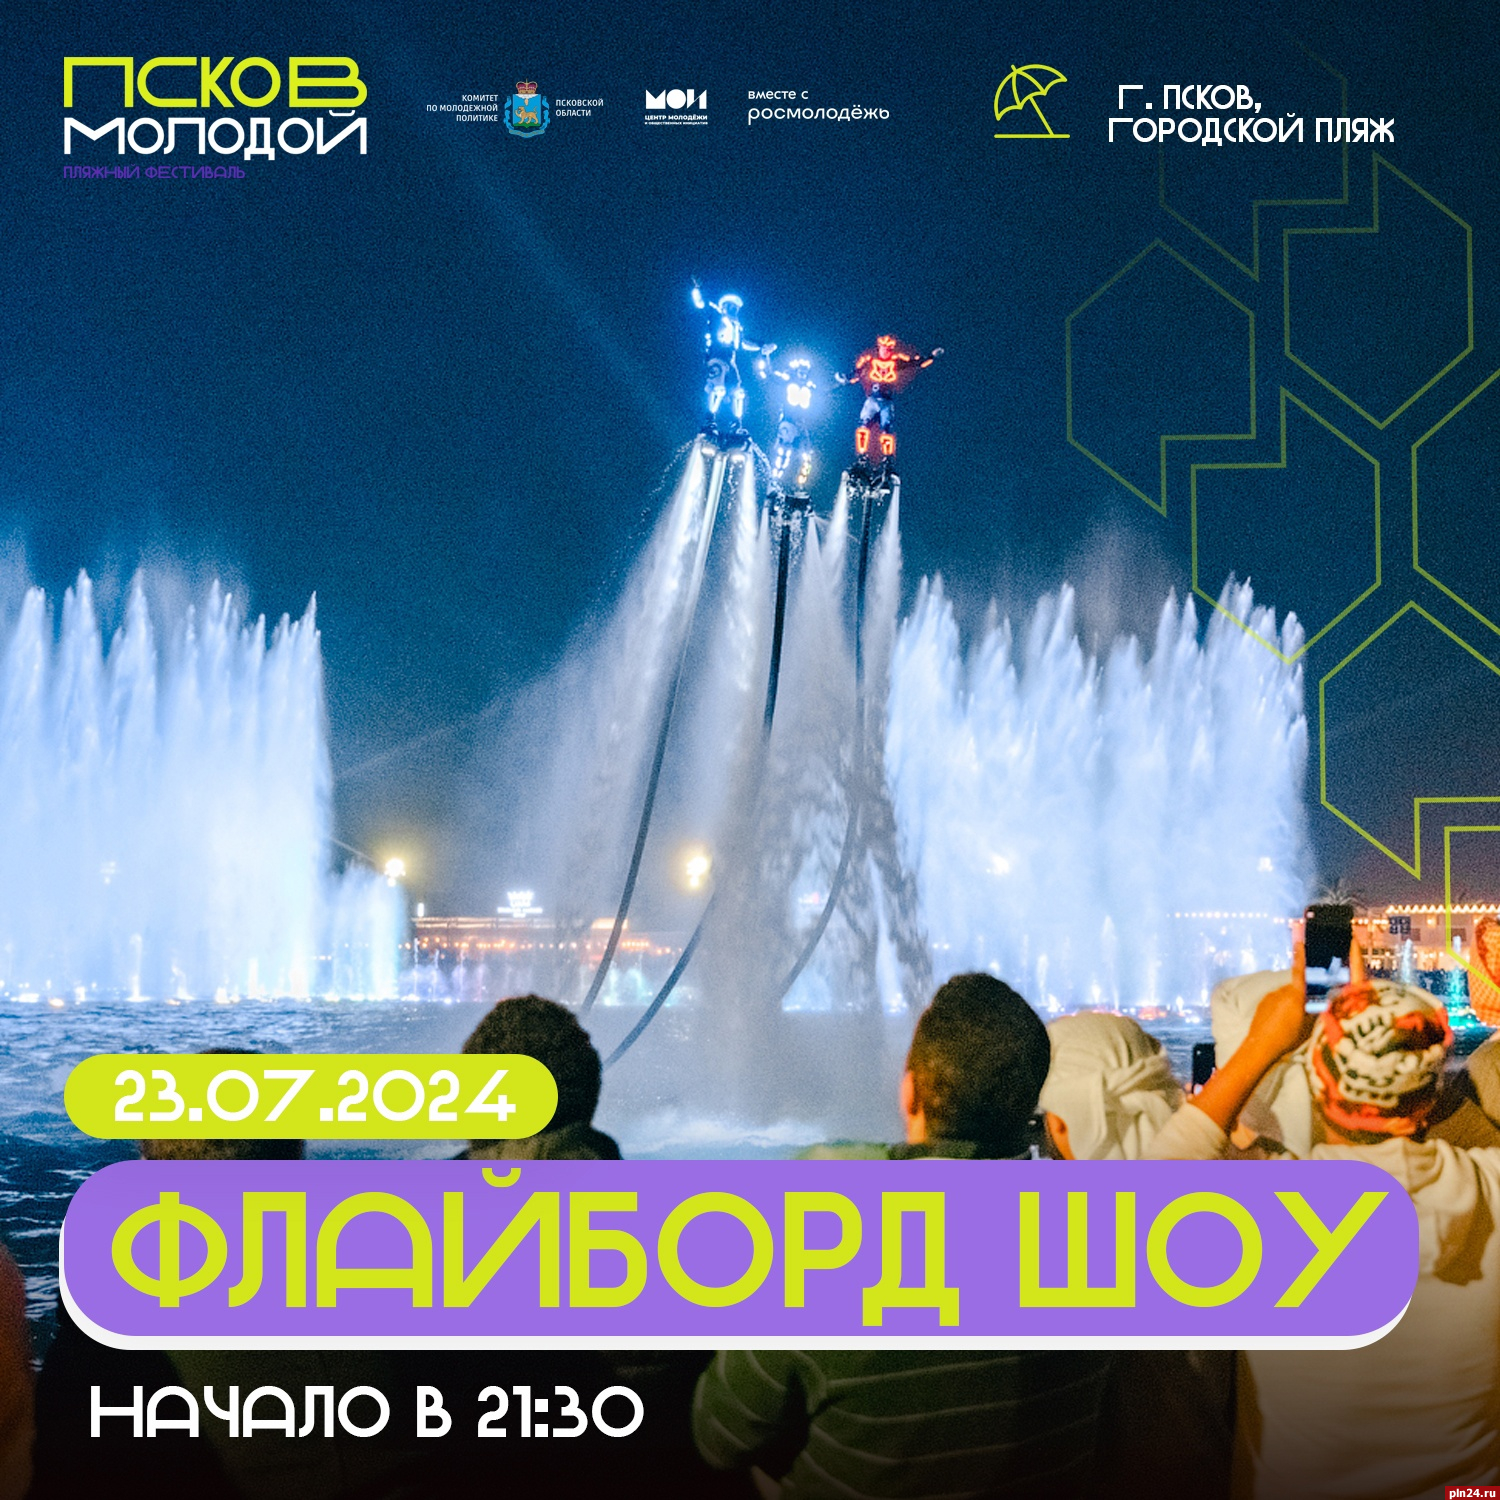 Флайборд-шоу состоится на пляже в День города Пскова